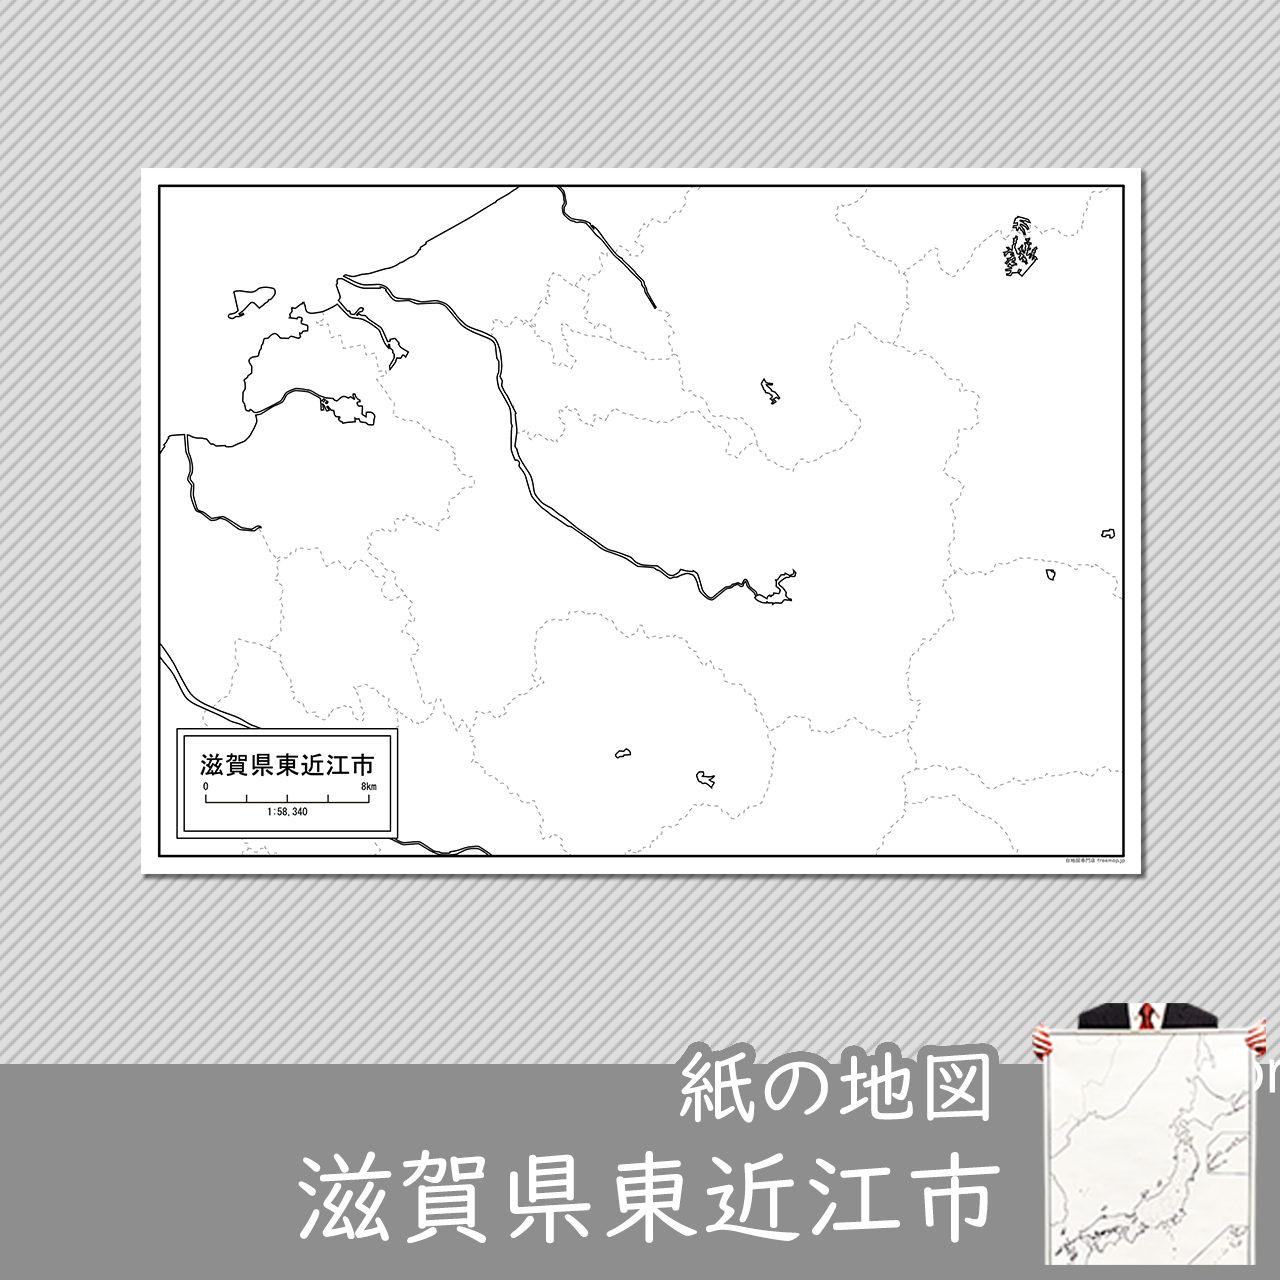 東近江市の紙の白地図のサムネイル